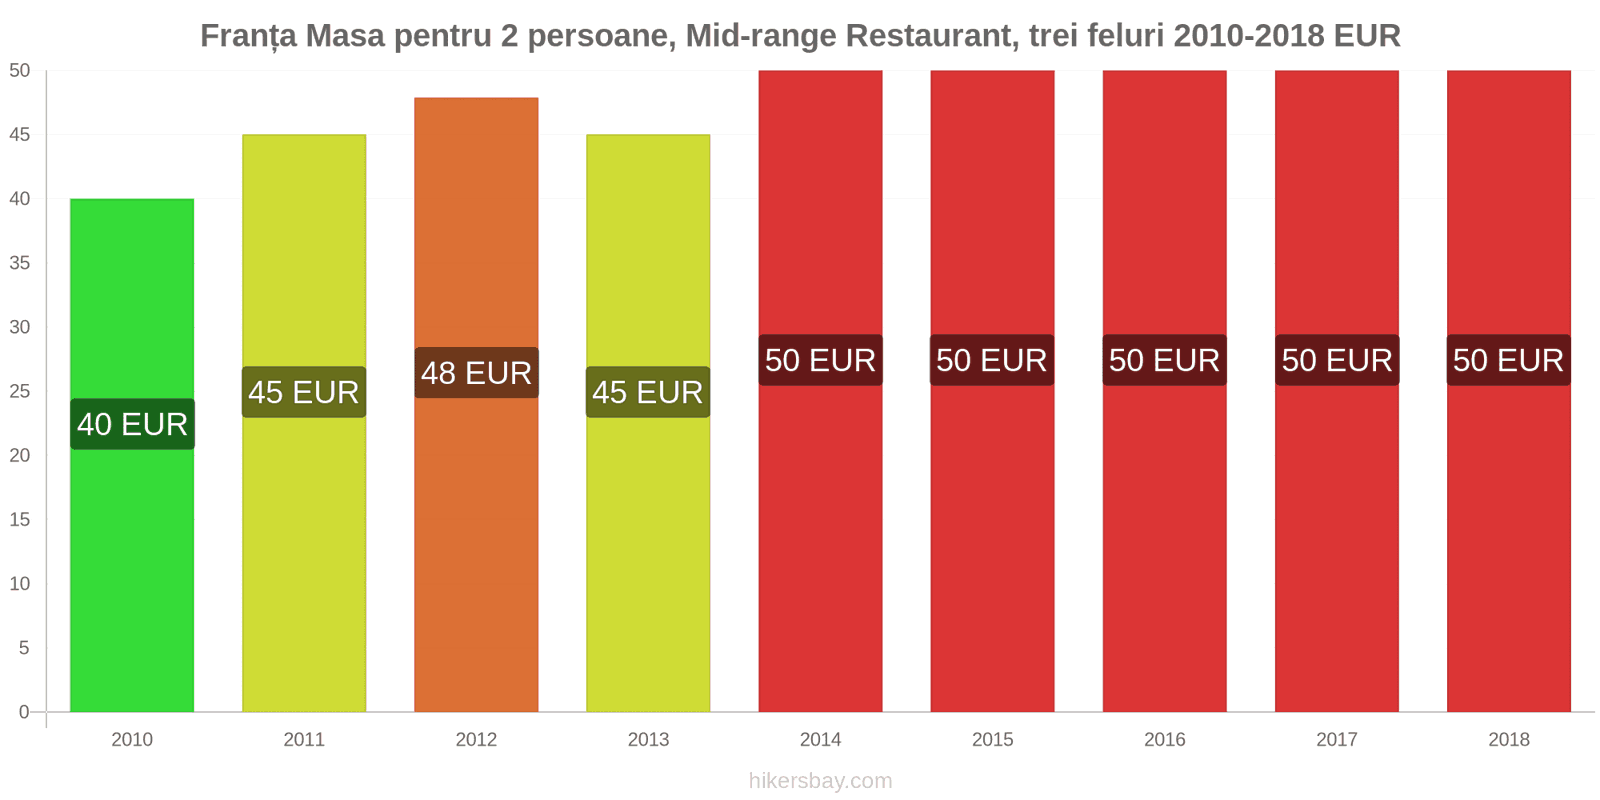 Franța schimbări de prețuri Masă pentru 2 persoane, restaurant de gamă medie, trei feluri de mâncare hikersbay.com